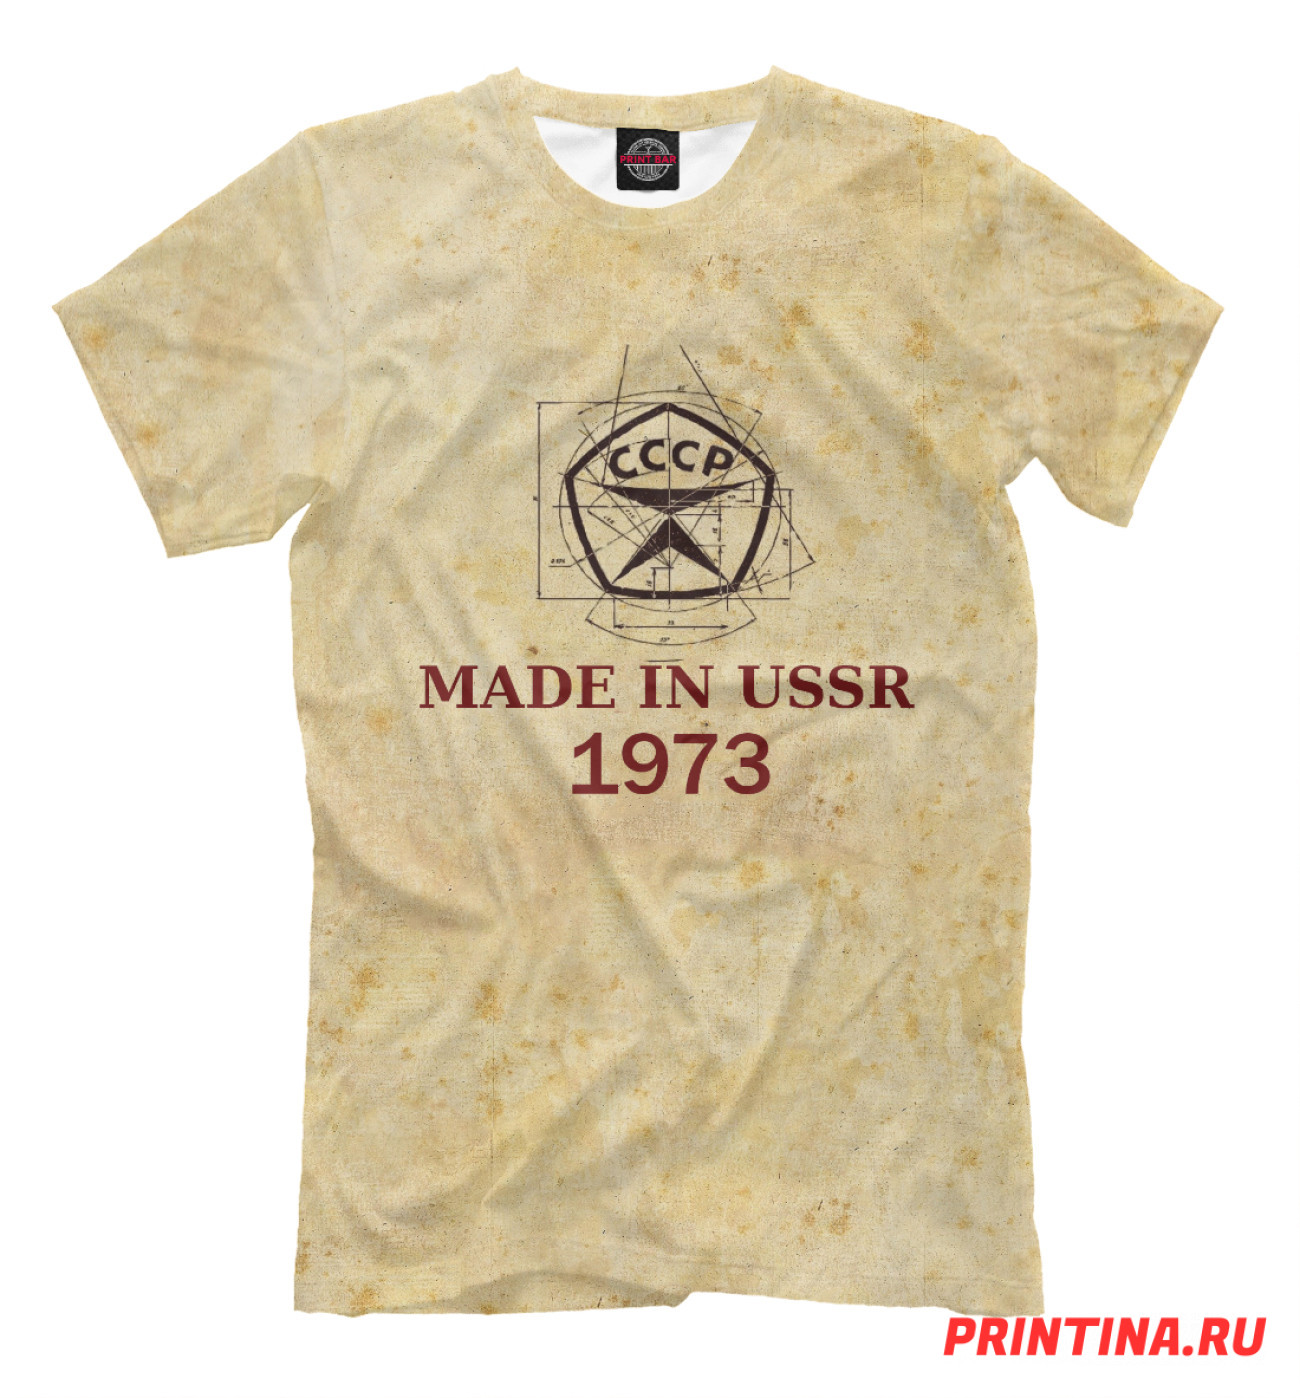 Мужская Футболка Made in СССР - 1973, артикул: DSM-886548-fut-2